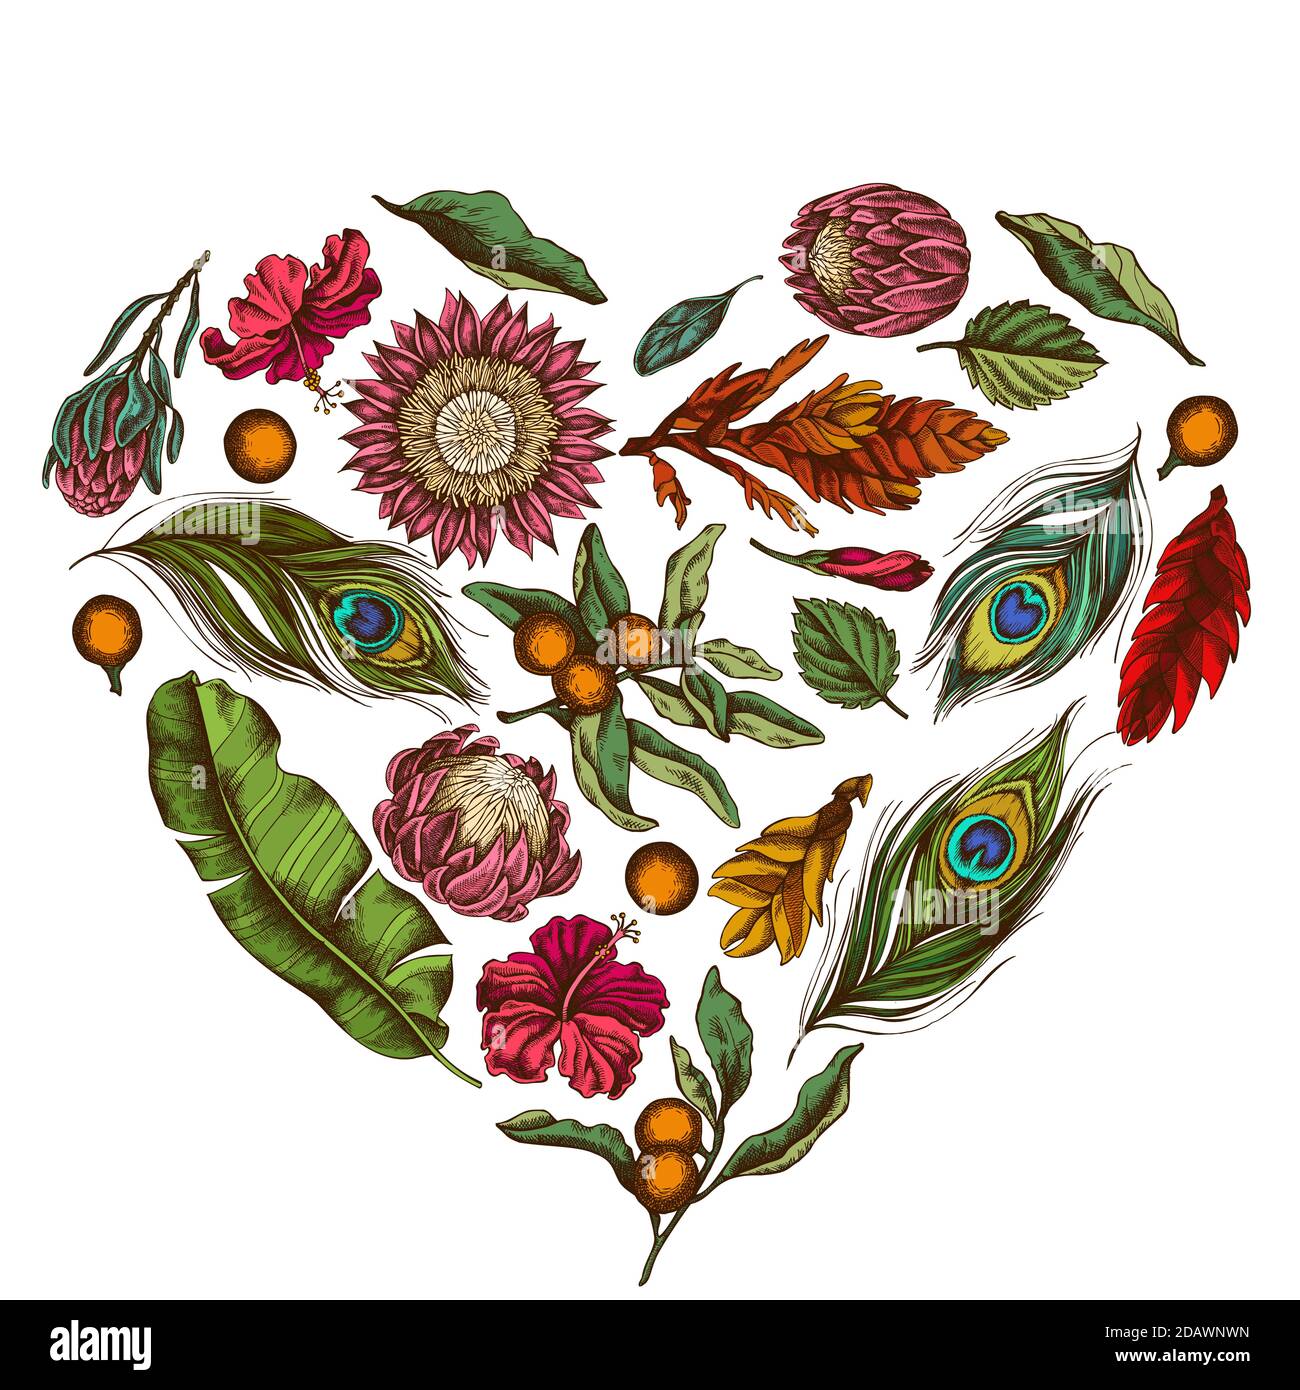 Motif coeur fleuri avec feuilles de banane de couleur, hibiscus, solanum, broméliade, plumes de paon, protea Illustration de Vecteur